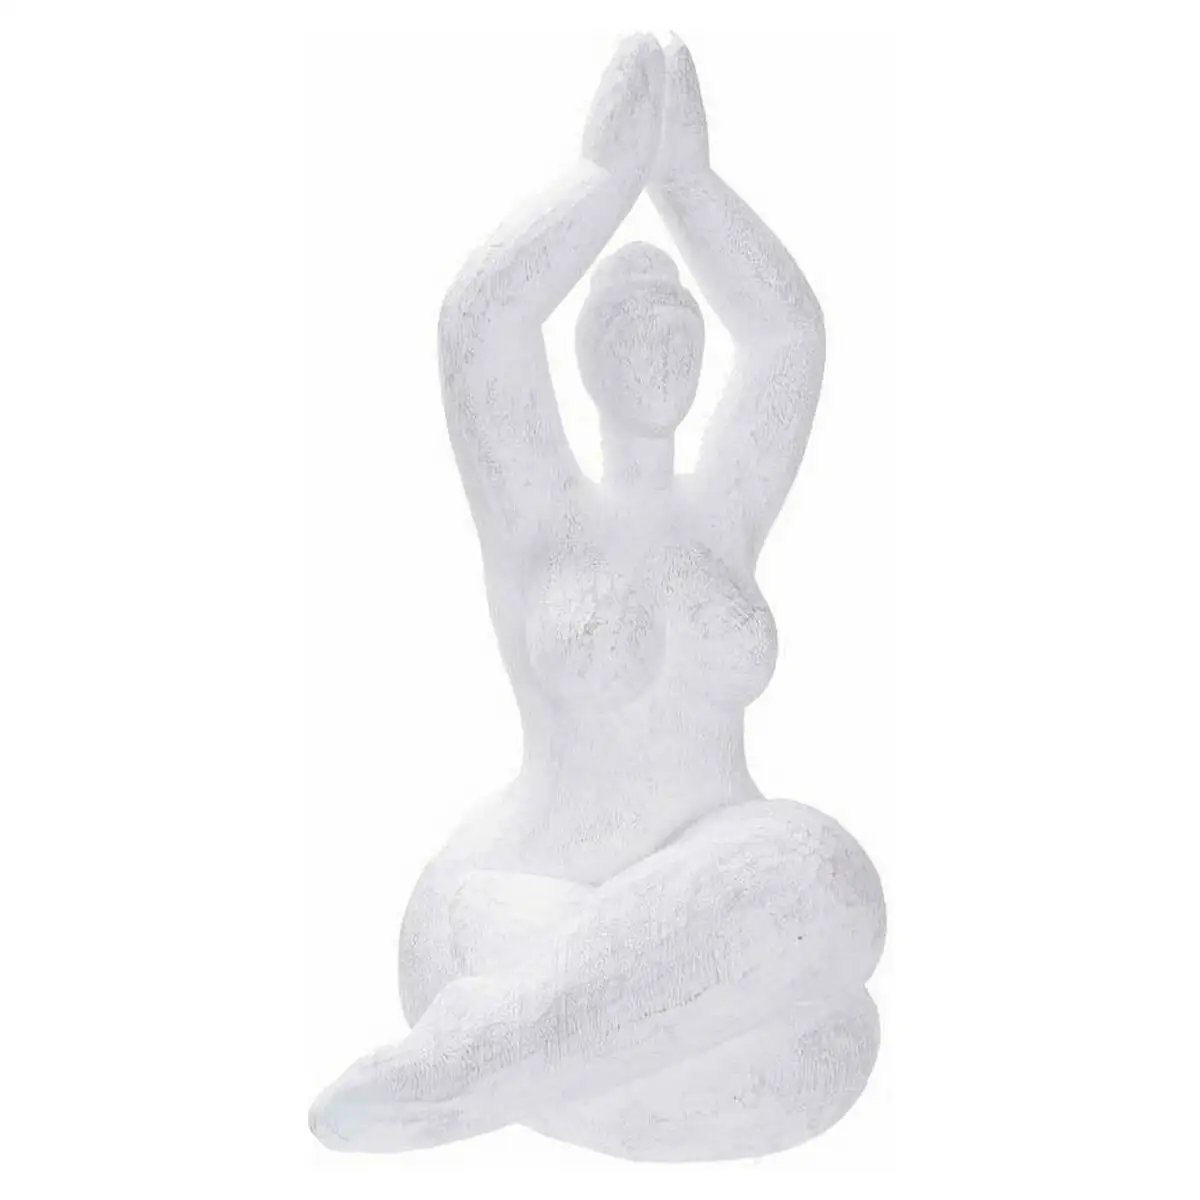 Figurine decorative dkd home decor 17 x 14 x 28 5 cm blanc yoga_2179. DIAYTAR SENEGAL - Votre Portail Vers l'Exclusivité. Explorez notre boutique en ligne pour trouver des produits uniques et exclusifs, conçus pour les amateurs de qualité.